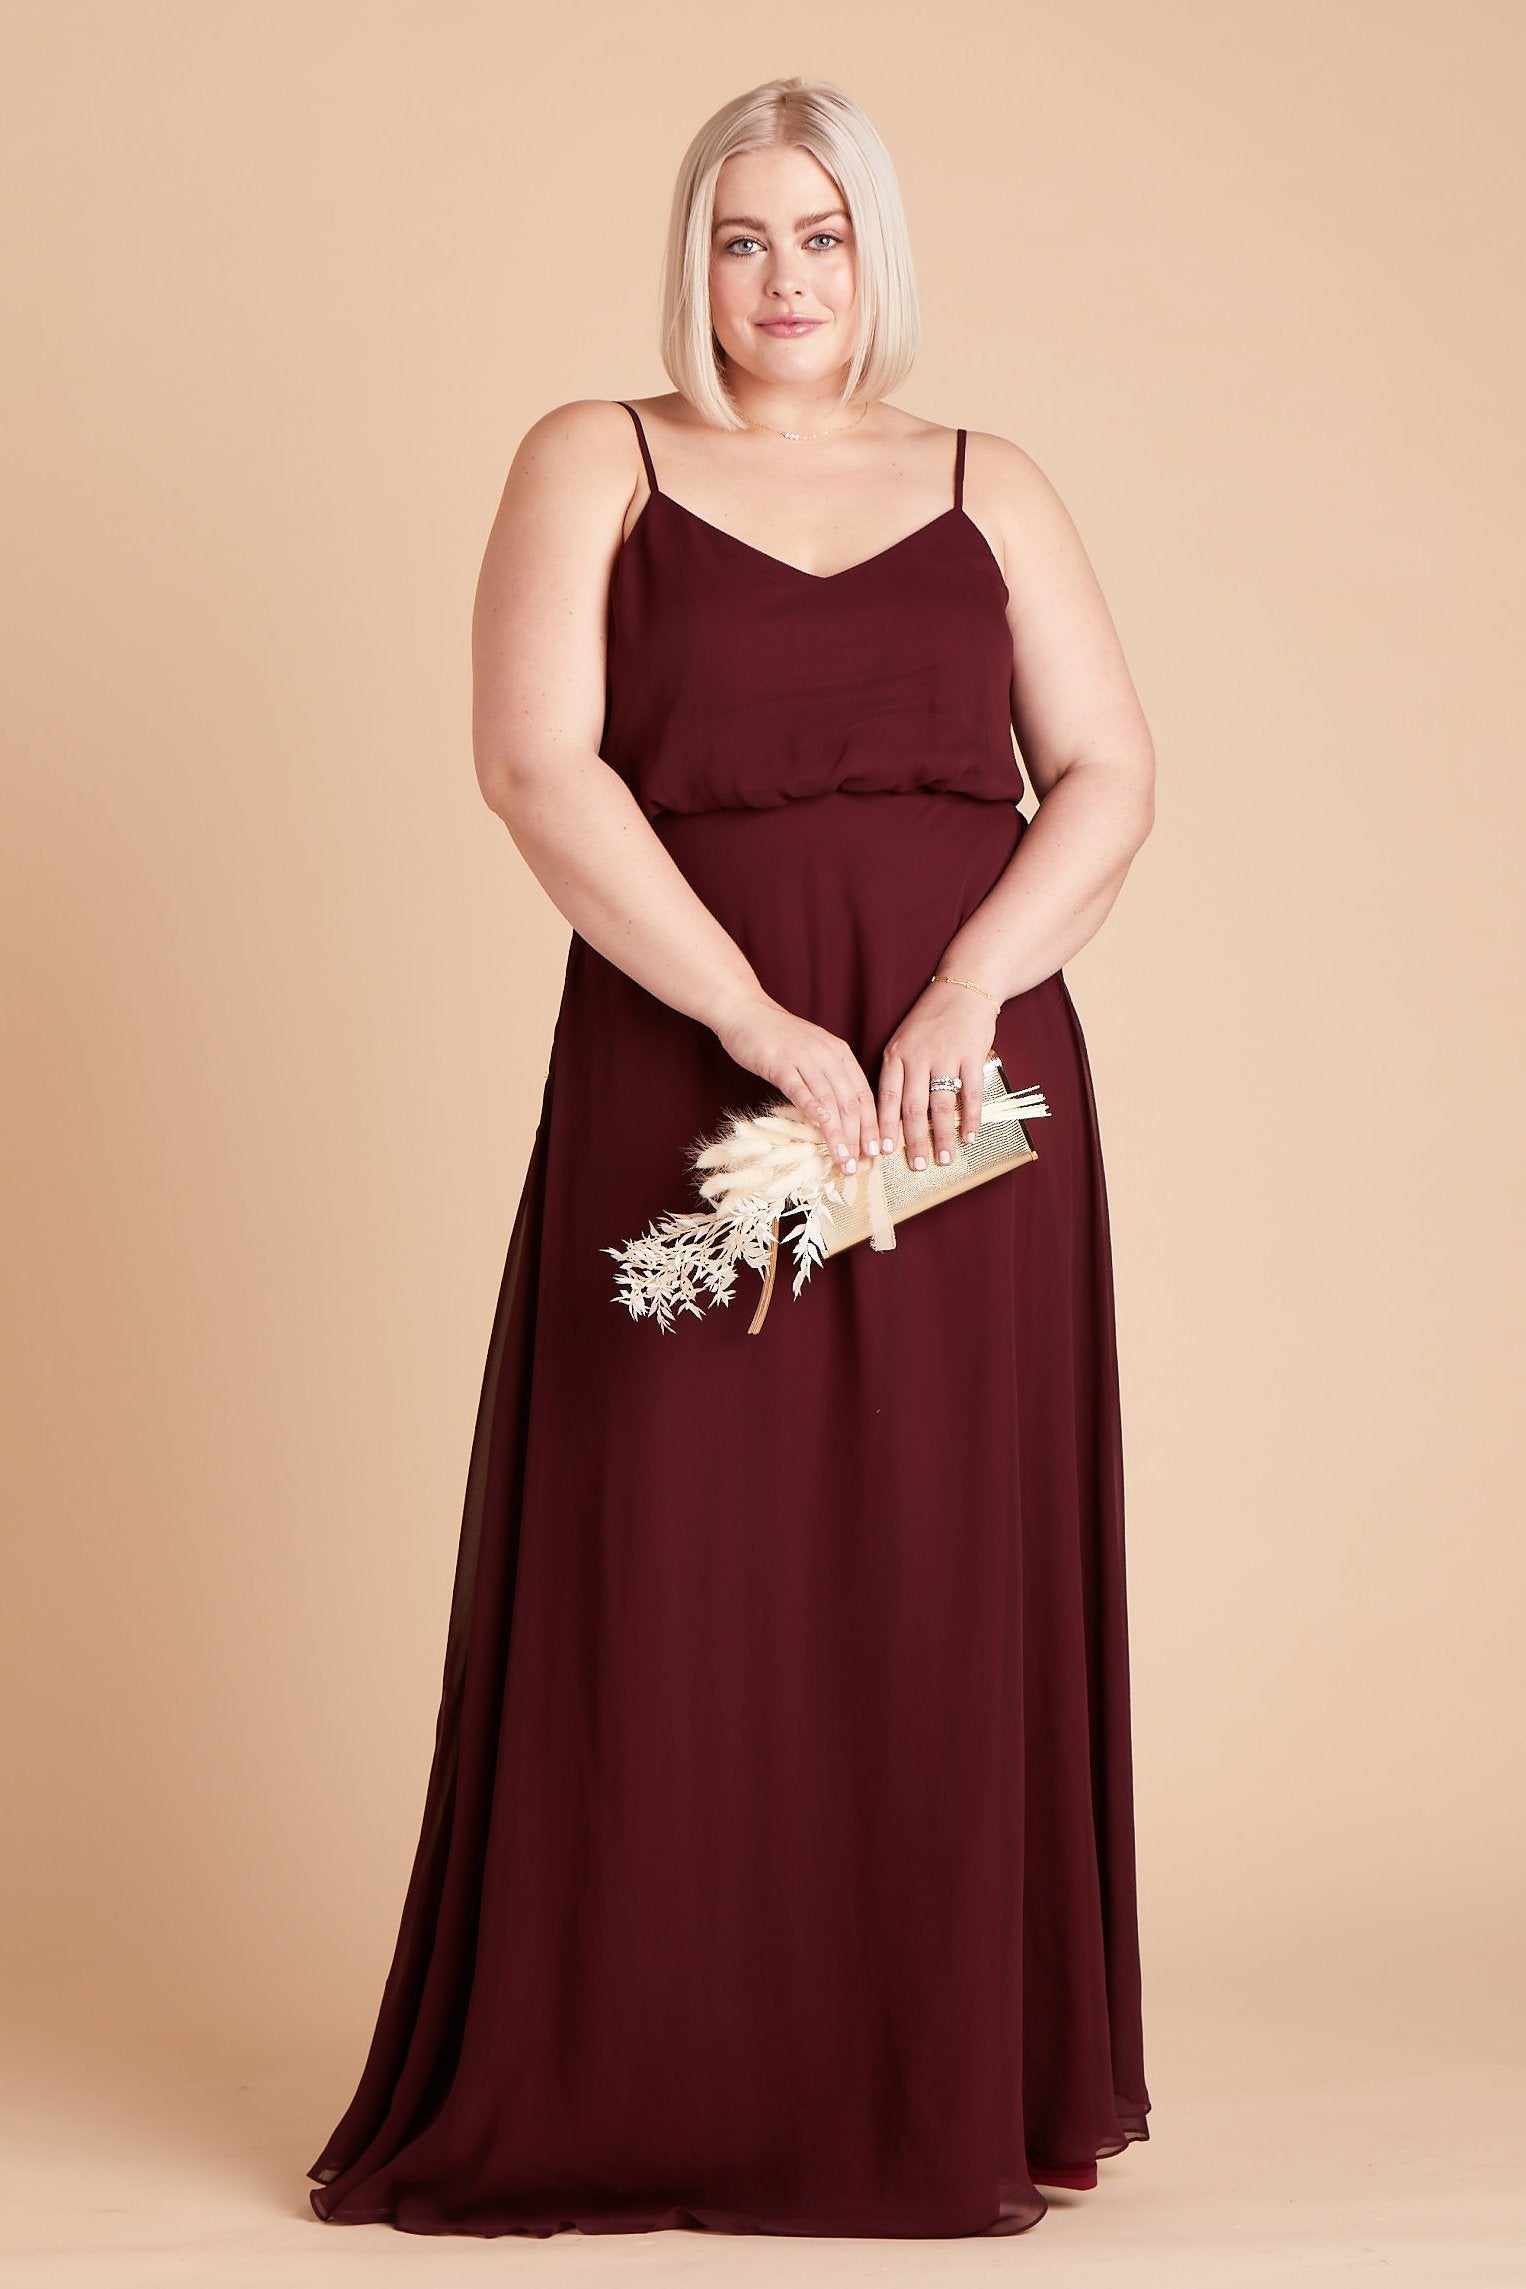 Gwennie plus size bridesmaid dress in cabernet burgundy chiffon by Birdy Grey, front view